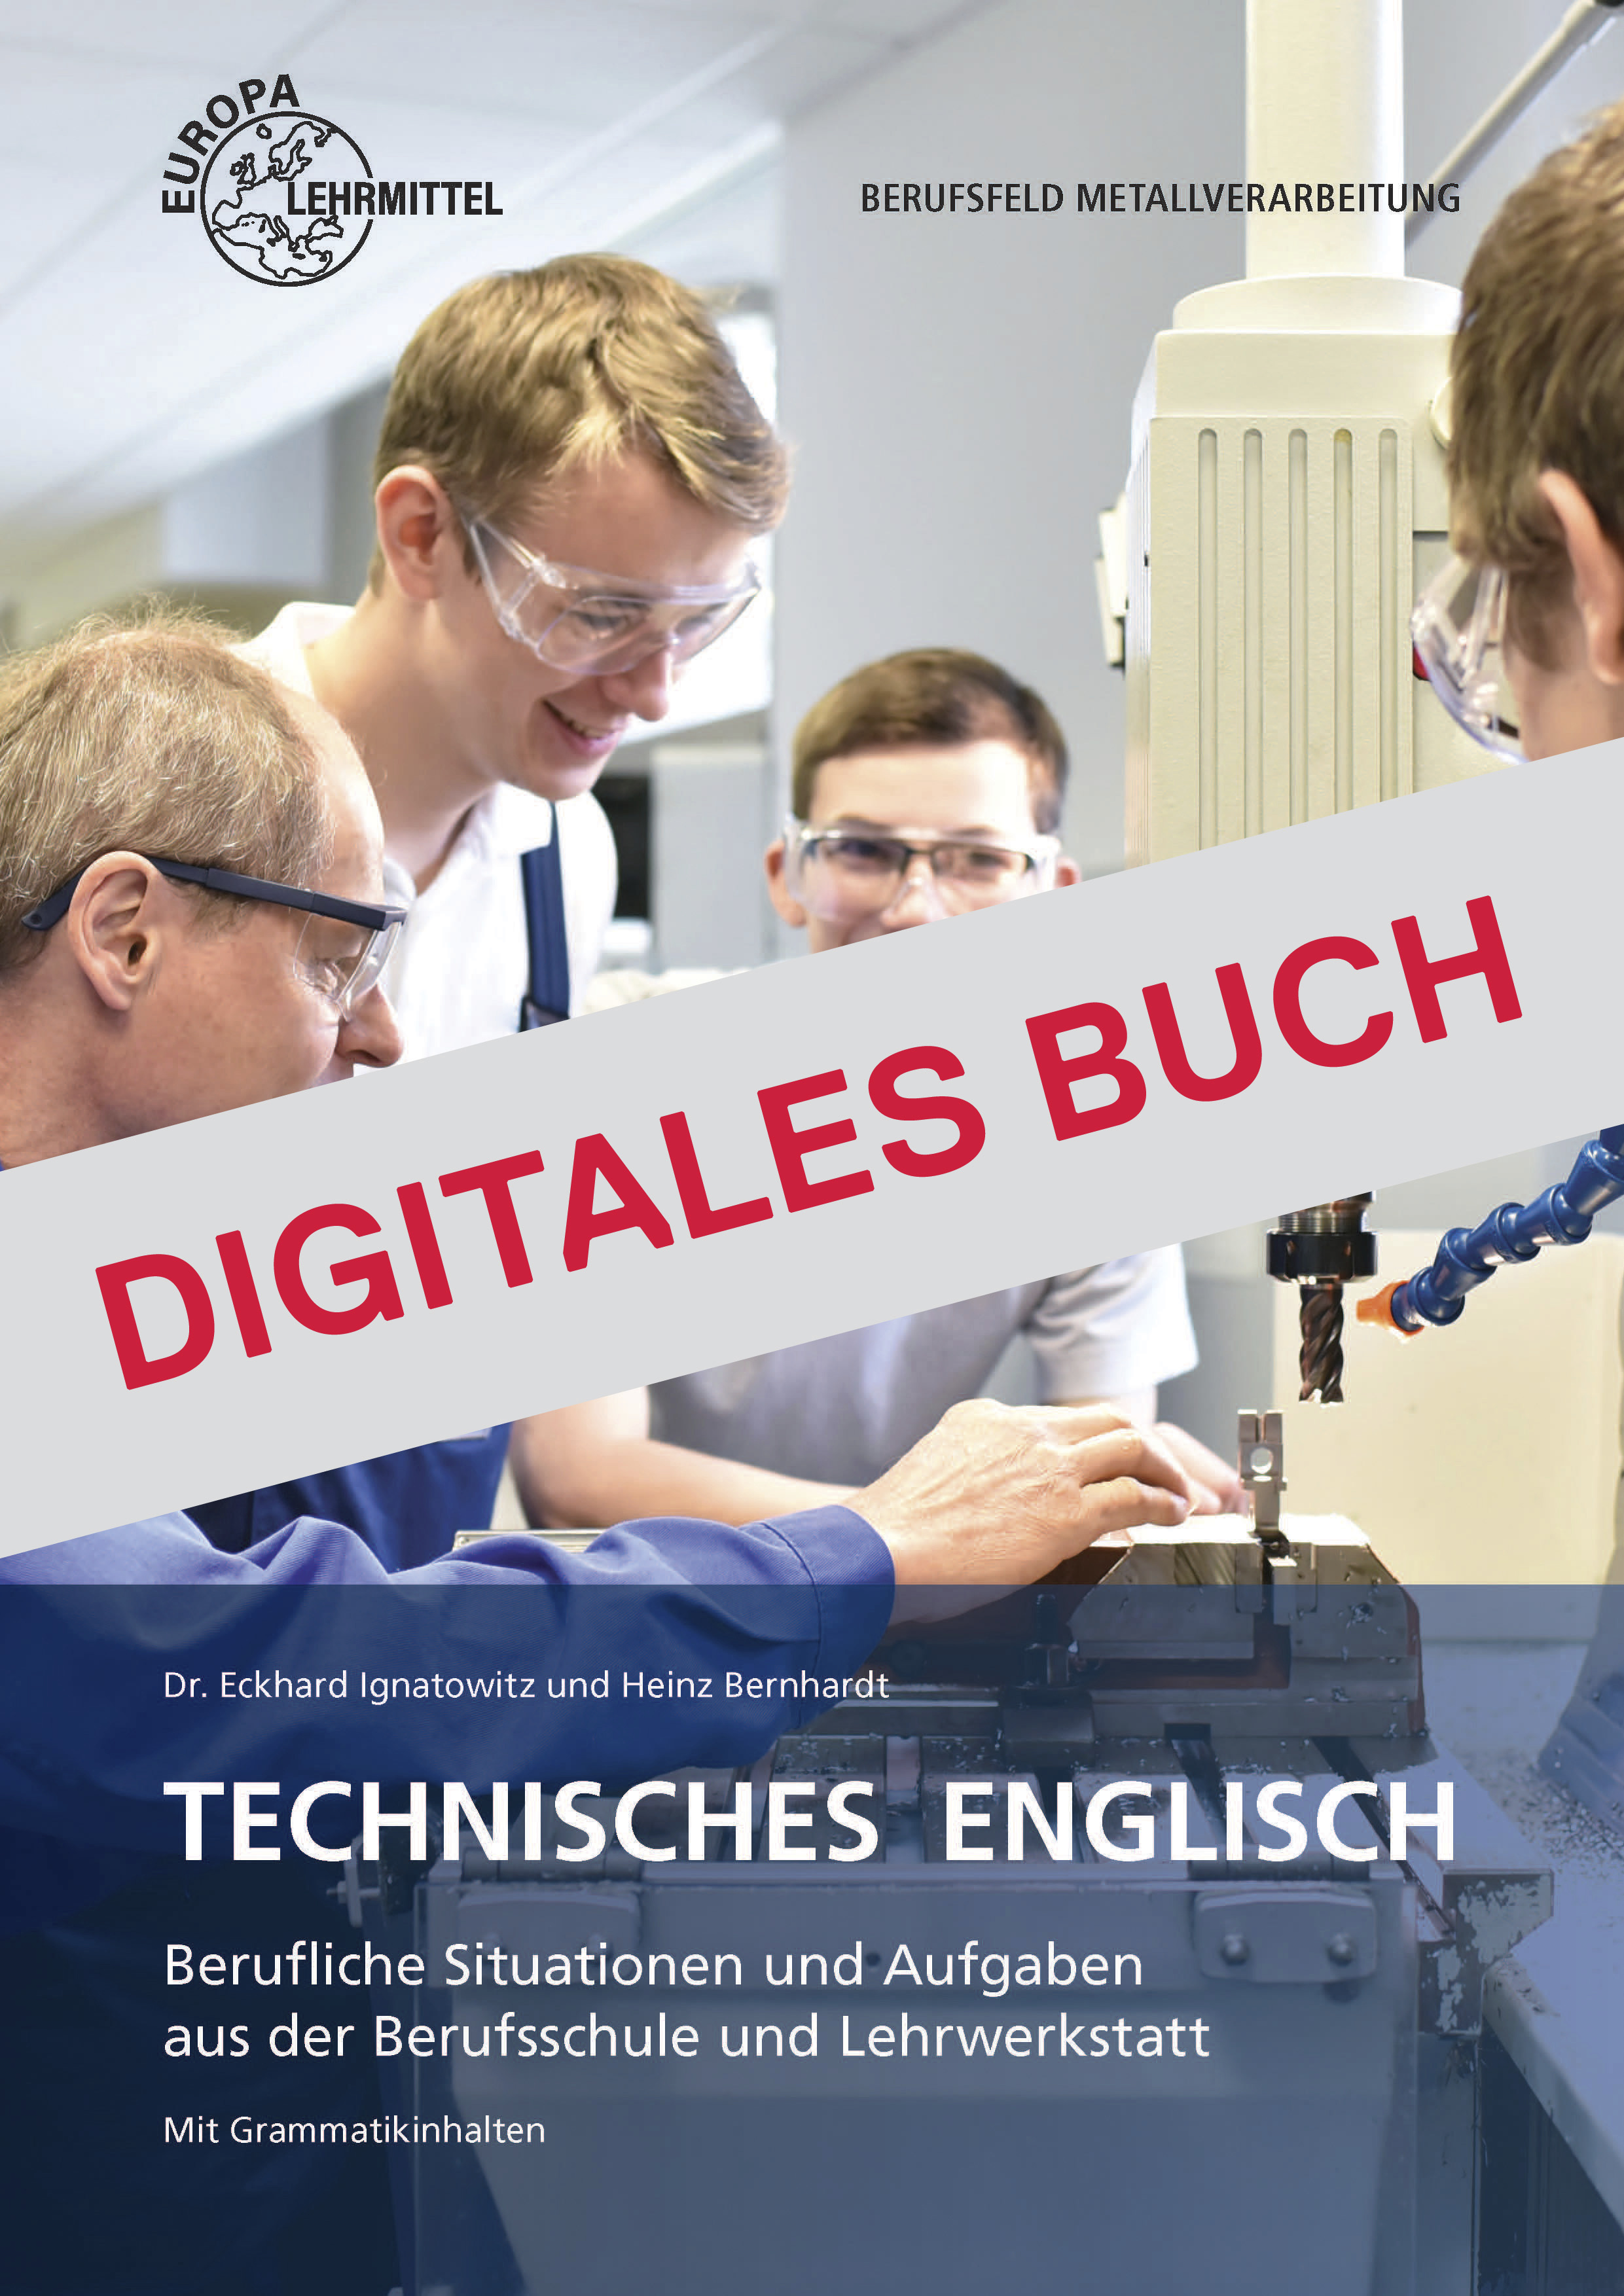 Technisches Englisch Berufliche Situationen und Aufgaben - Digitales Buch